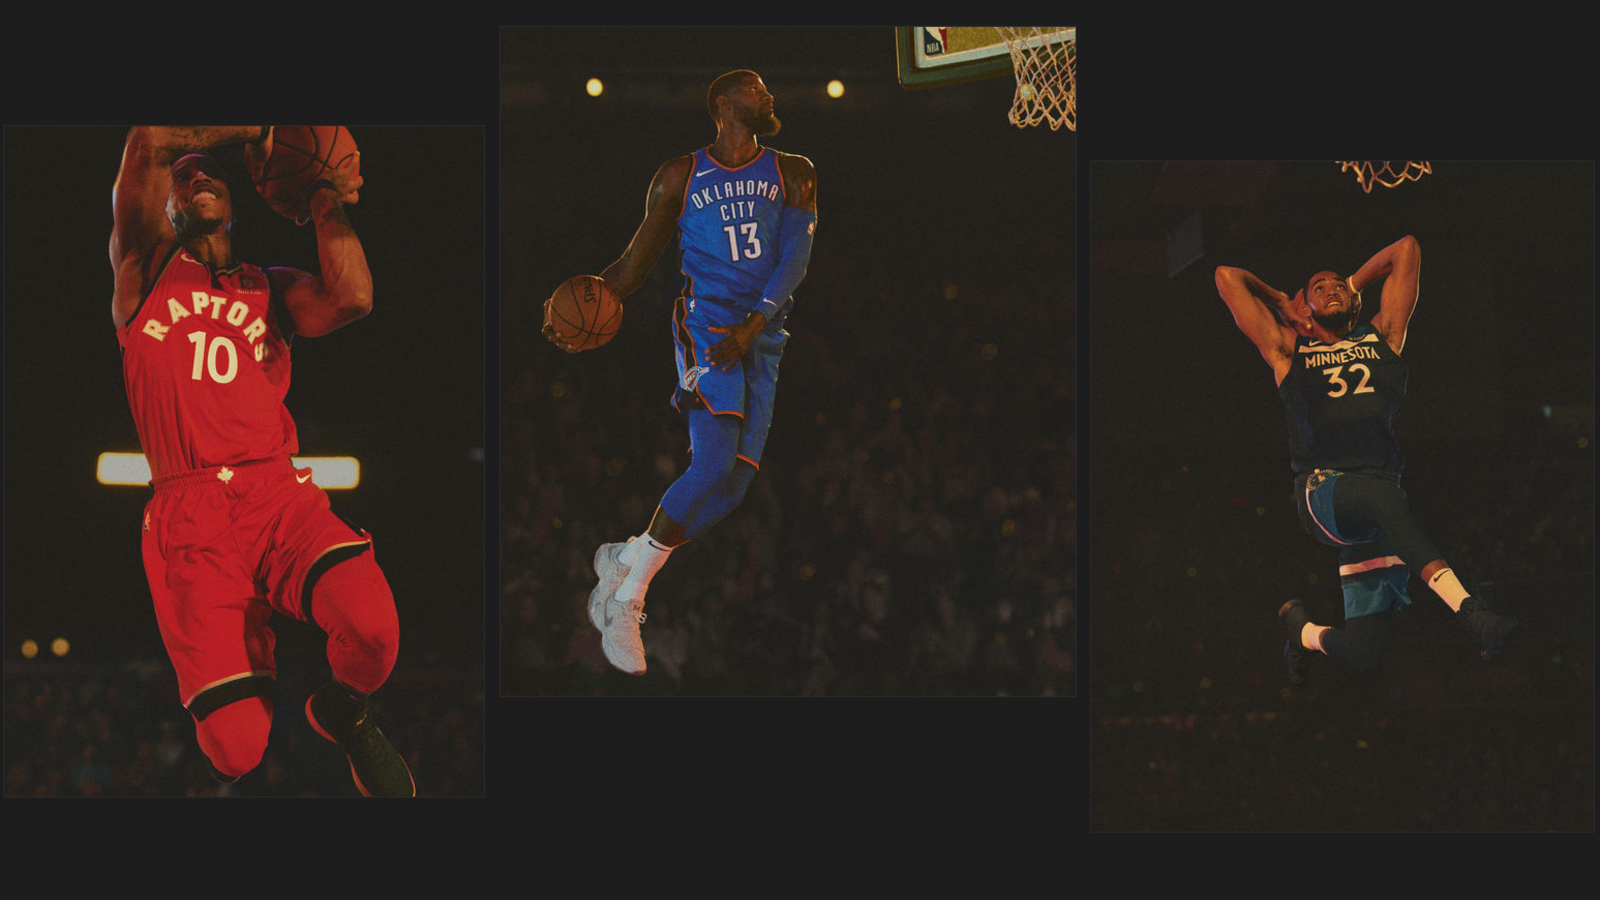 Nike NBA Basketball Jersey 10